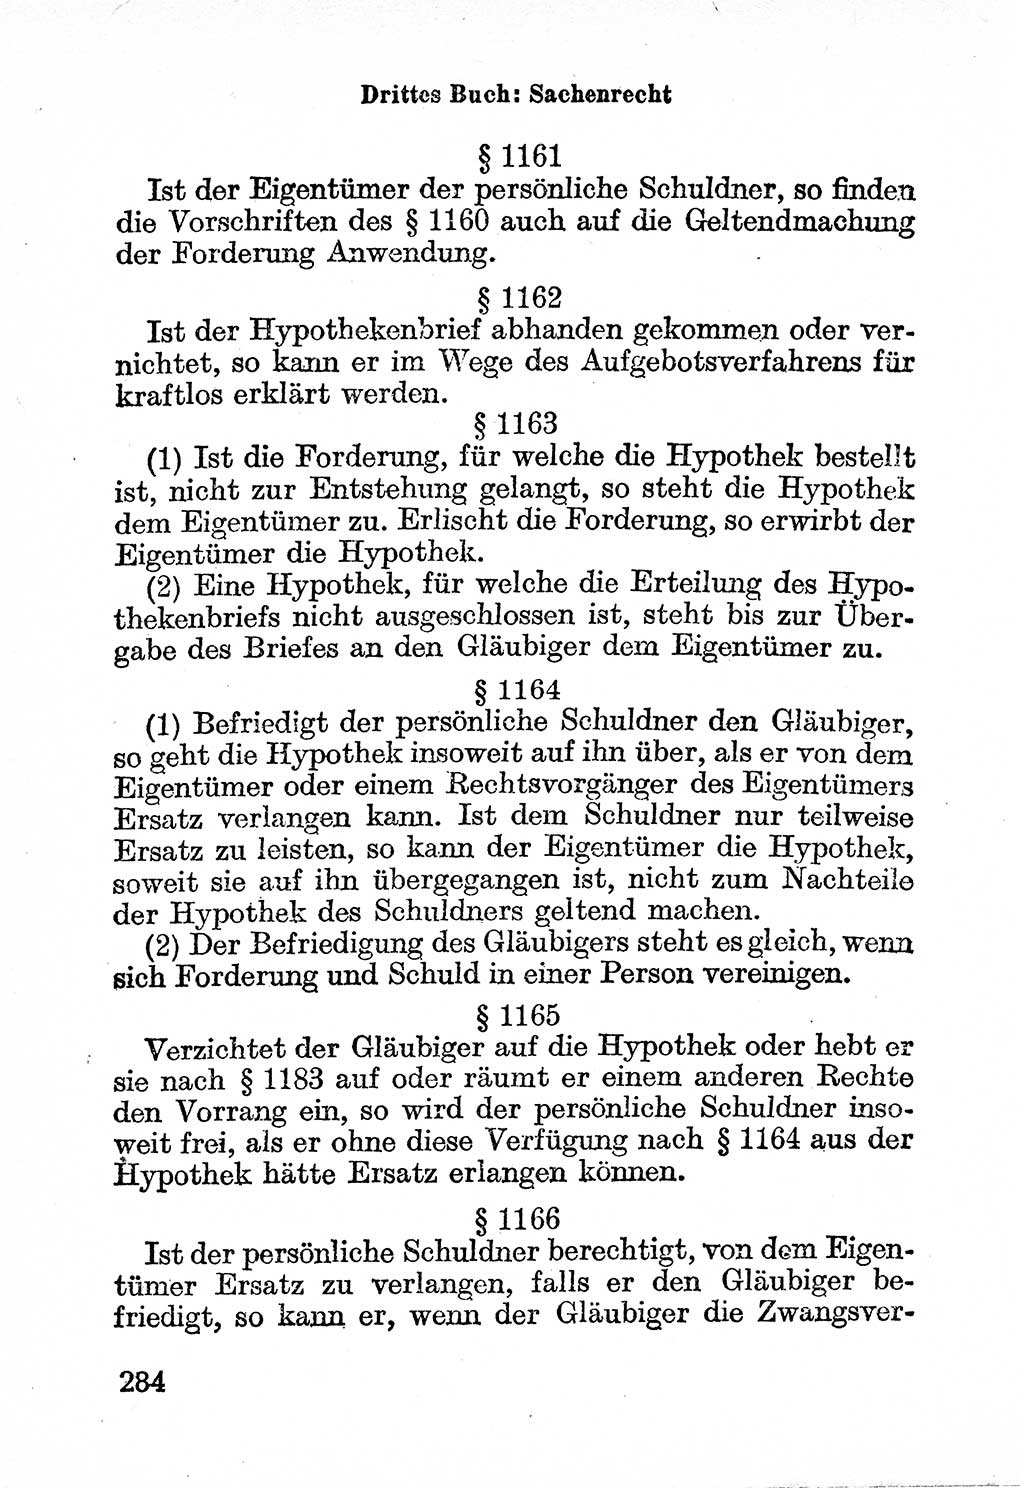 Bürgerliches Gesetzbuch (BGB) nebst wichtigen Nebengesetzen [Deutsche Demokratische Republik (DDR)] 1956, Seite 284 (BGB Nebenges. DDR 1956, S. 284)